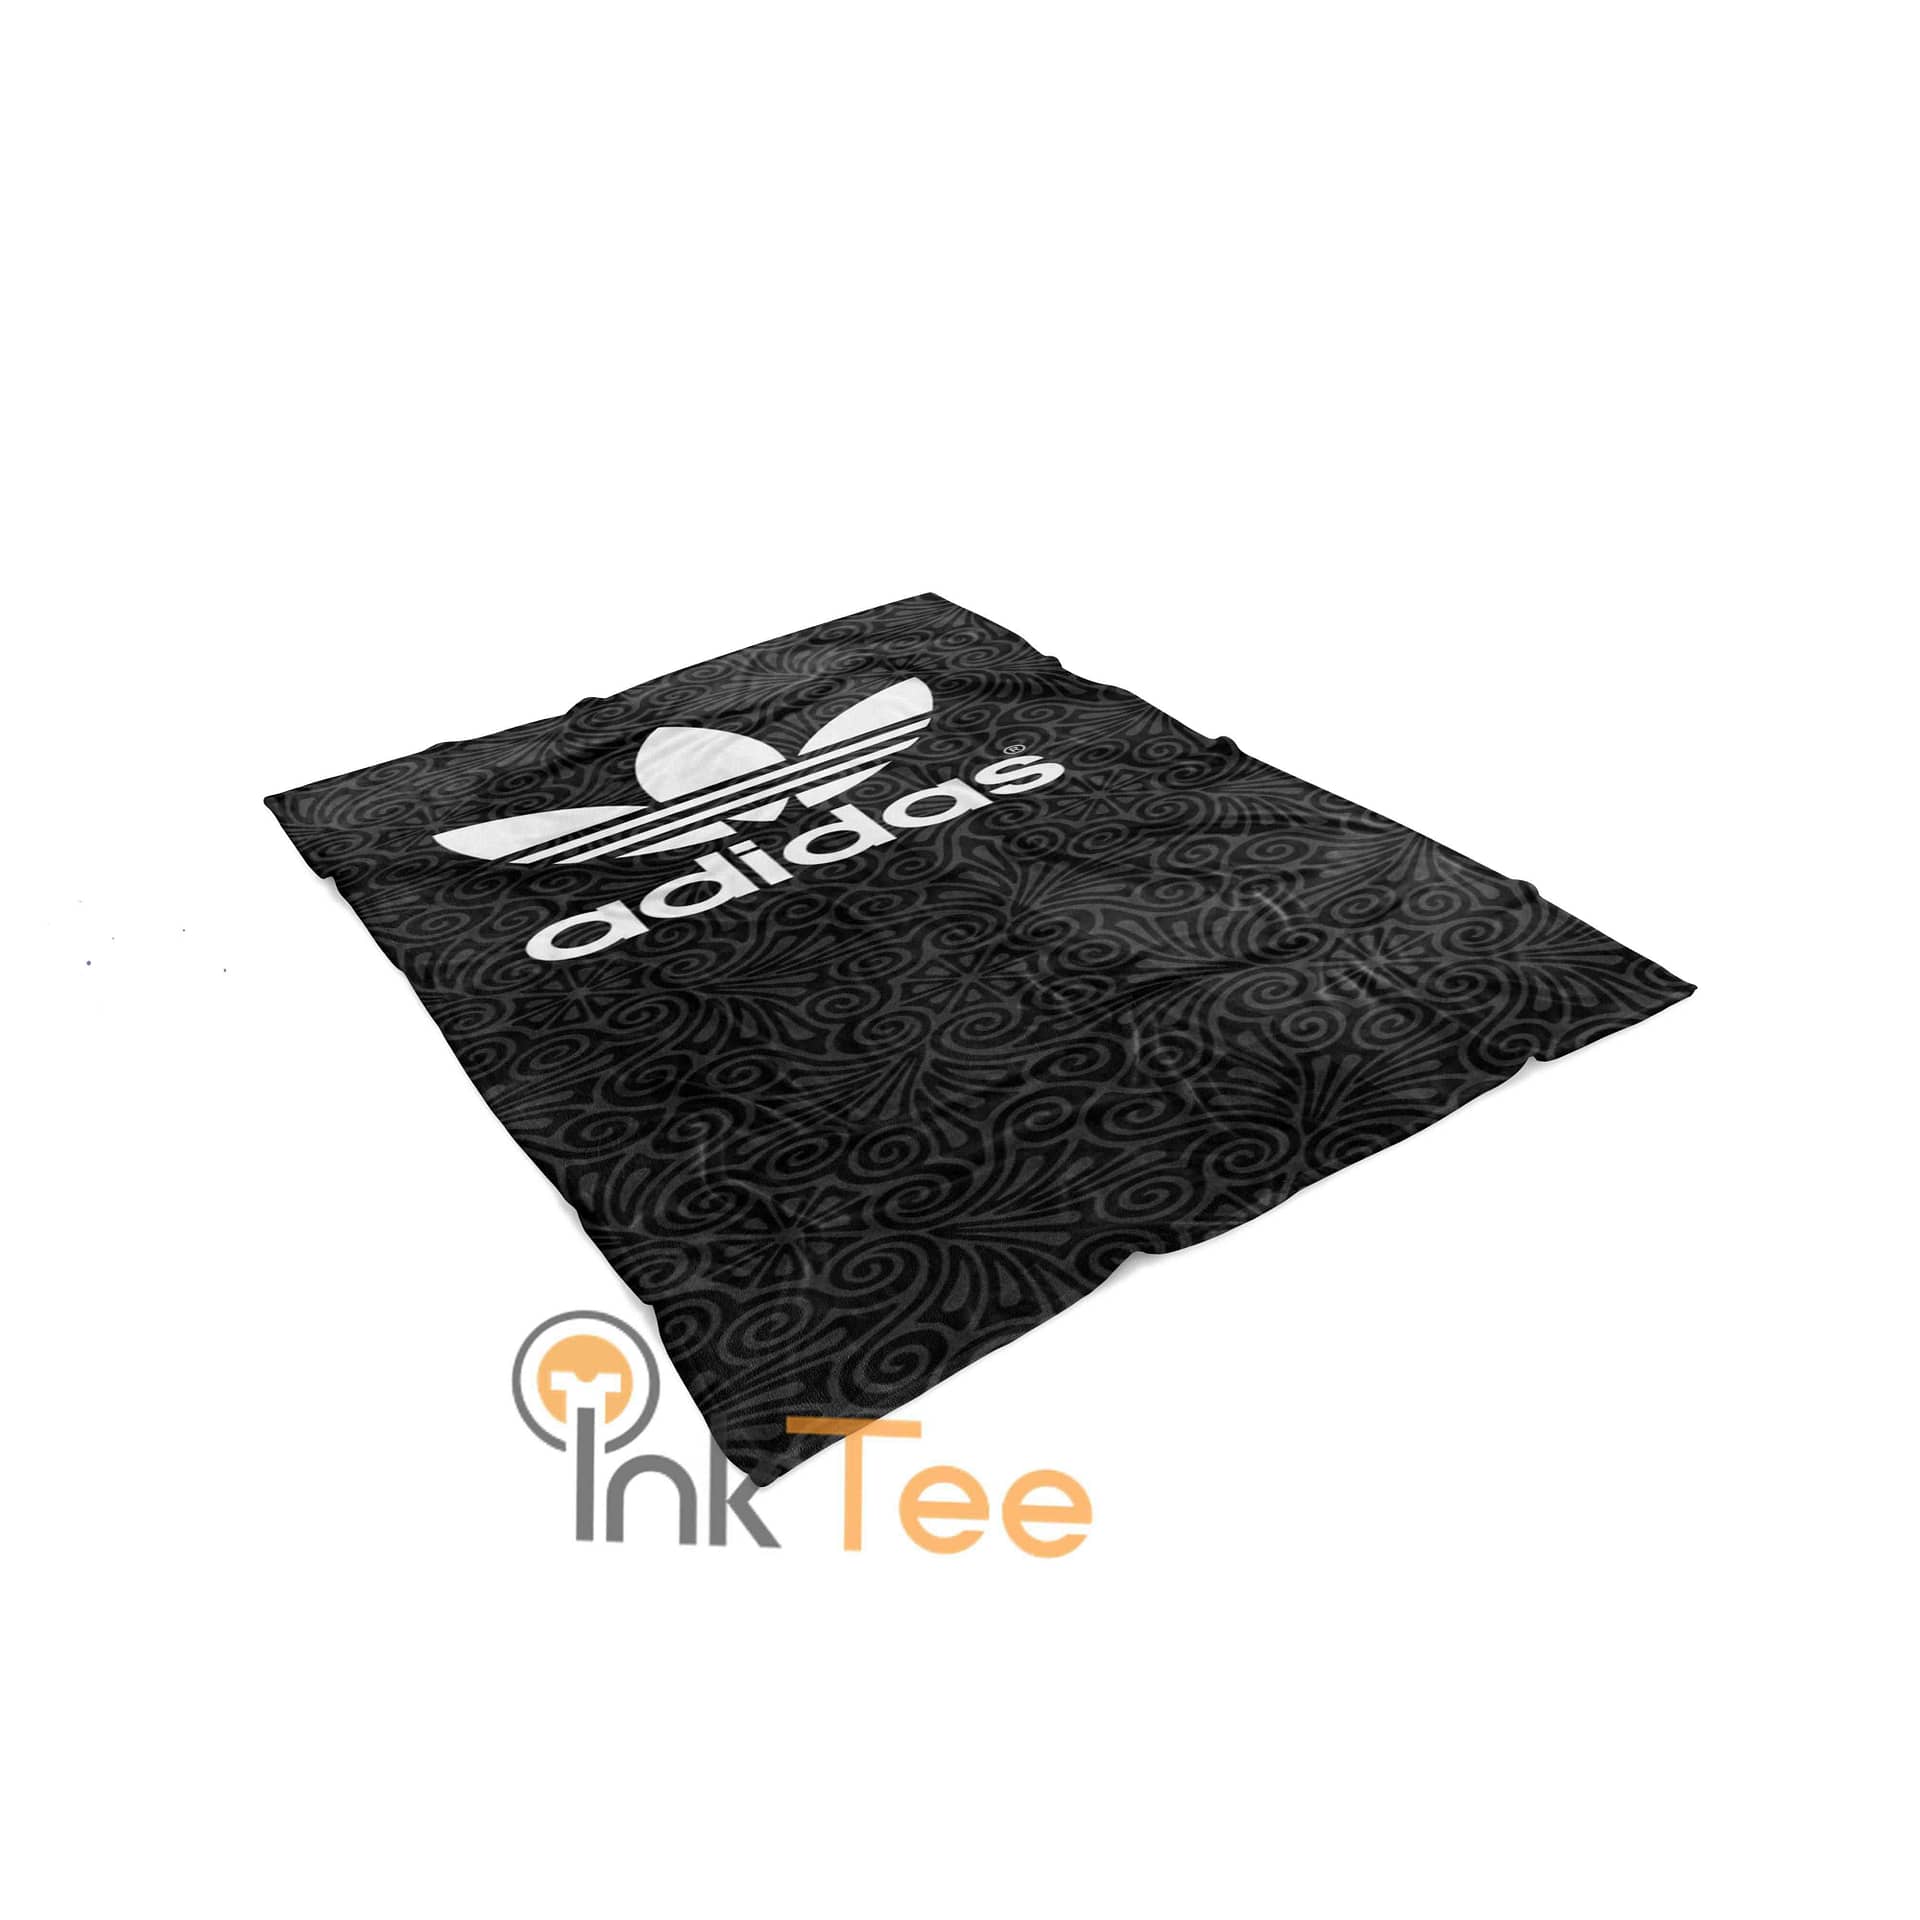 Inktee Store - Adidas Area Amazon Best Seller Sku 4030 Fleece Blanket Image